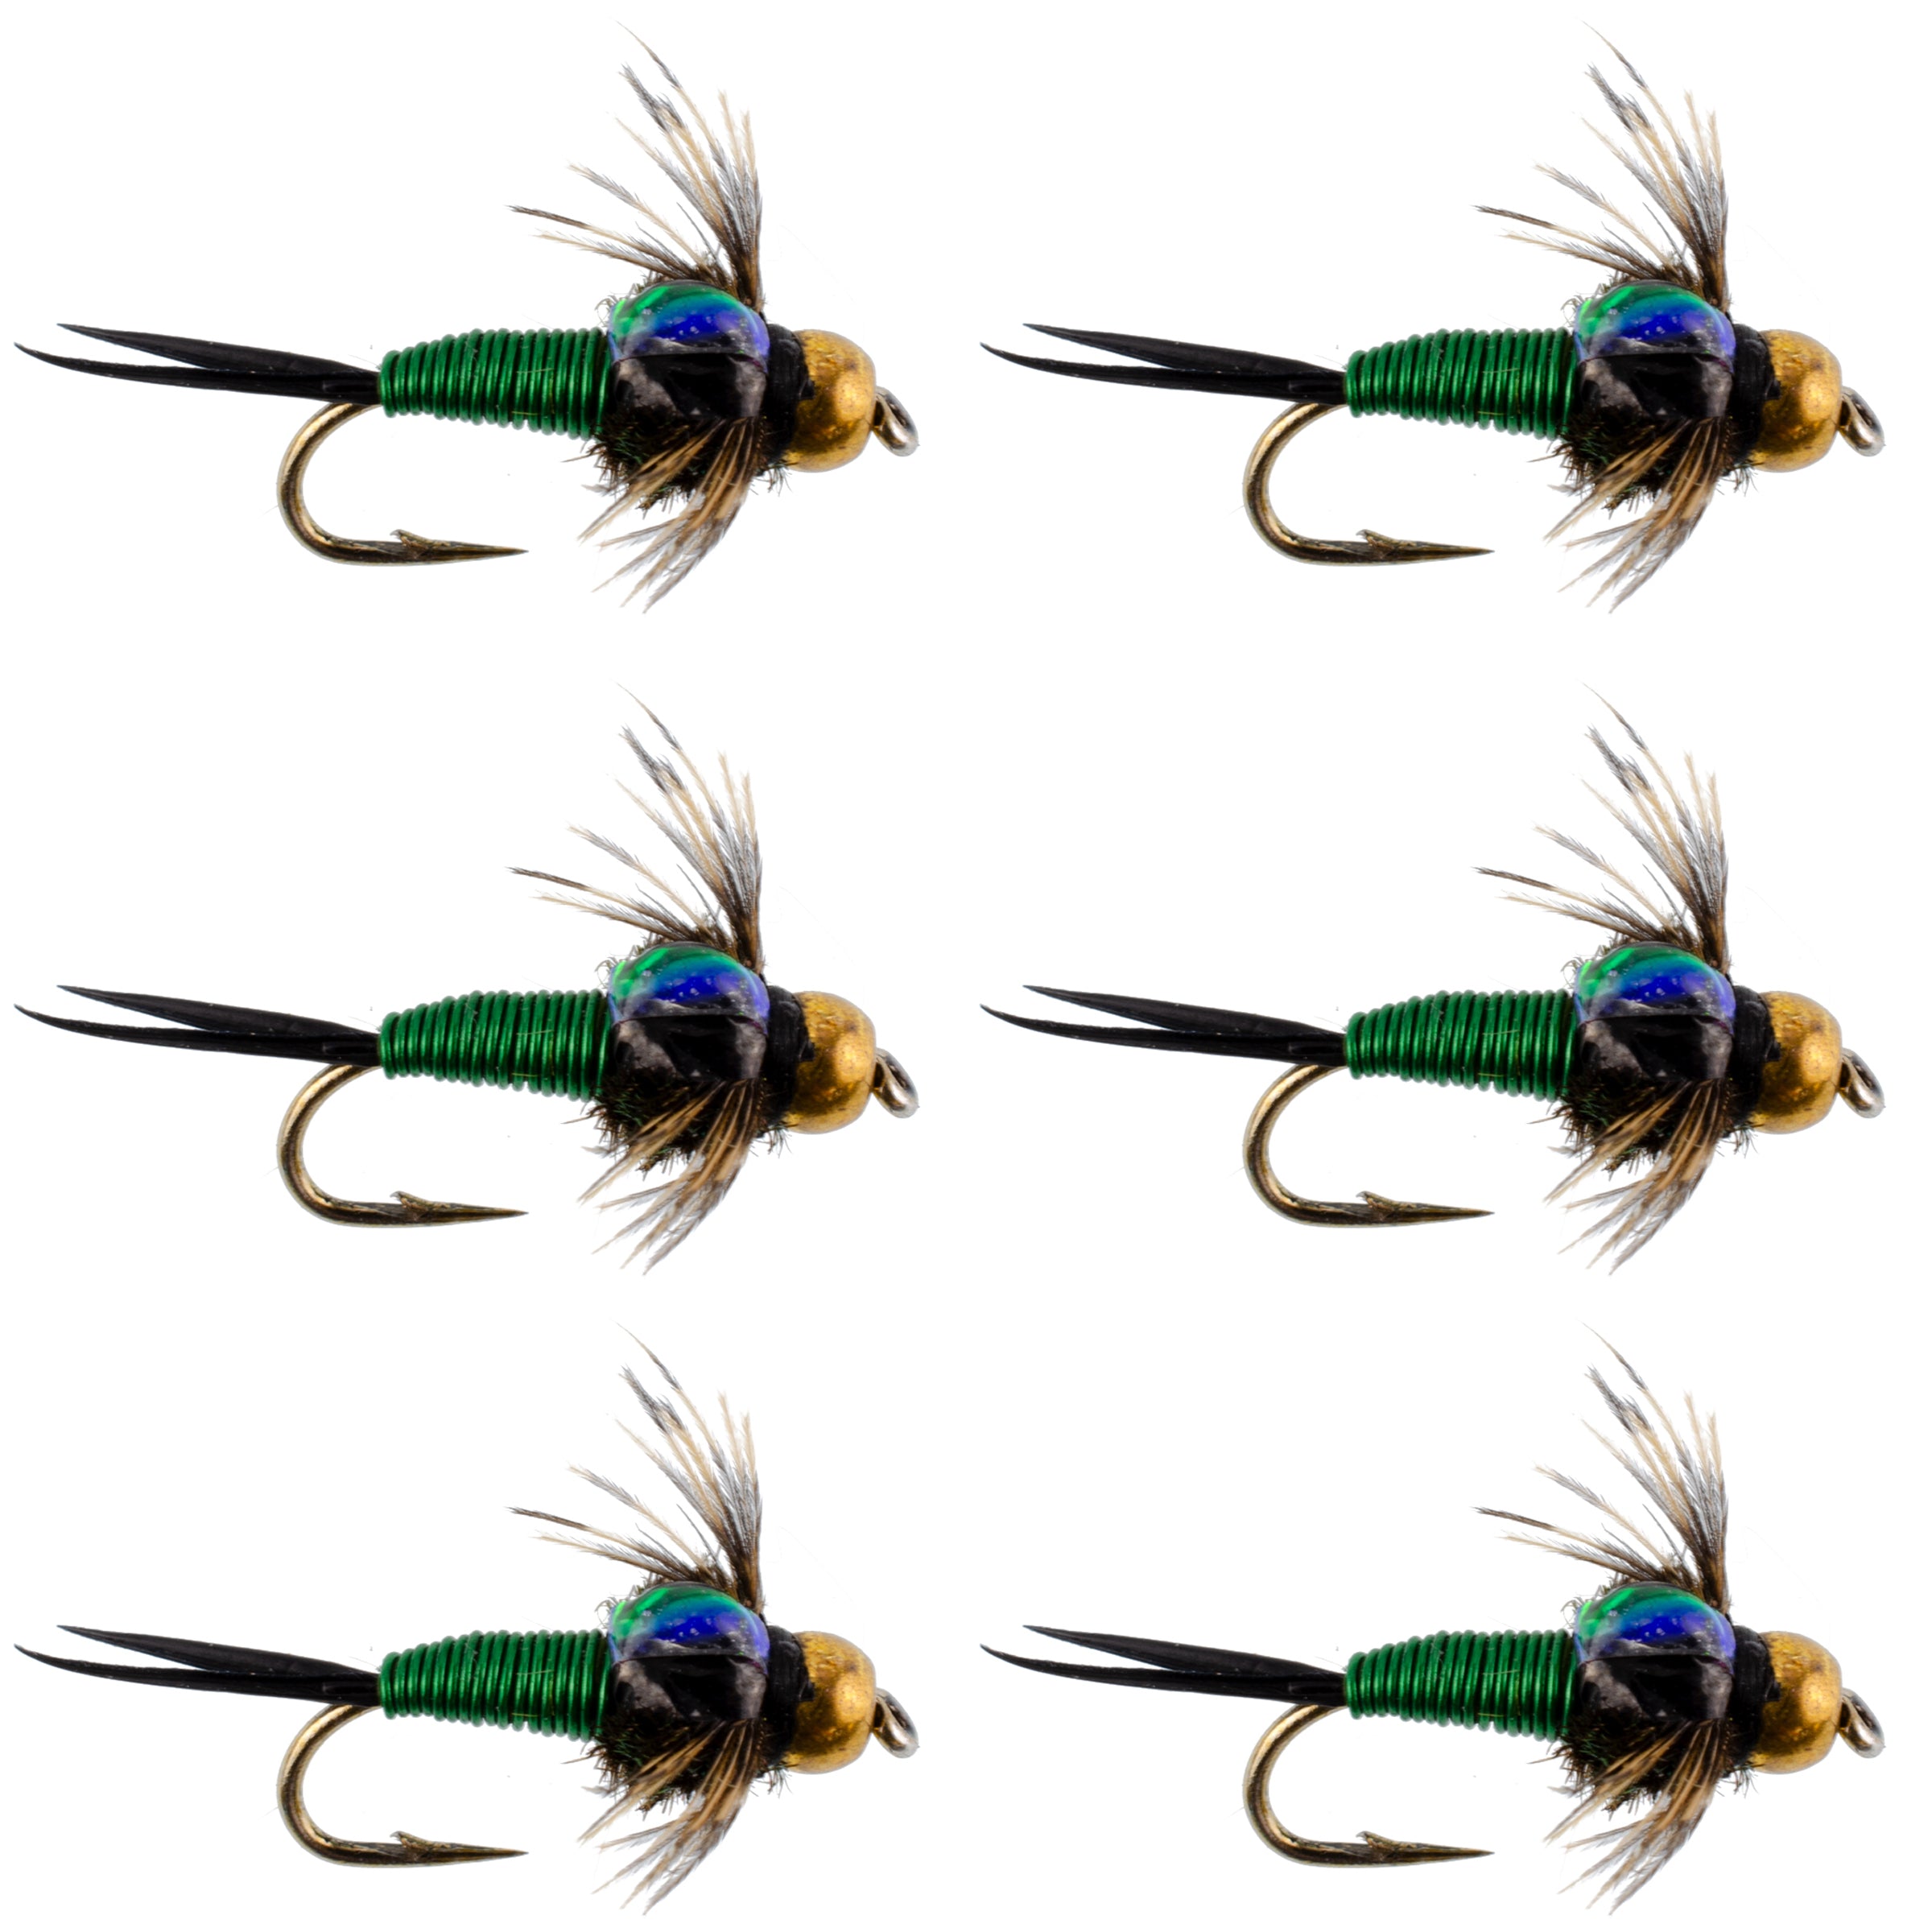 Bead Head Green Copper John Nymph Fly Fishing Flies - Set of 6 Flies Hook Size 14